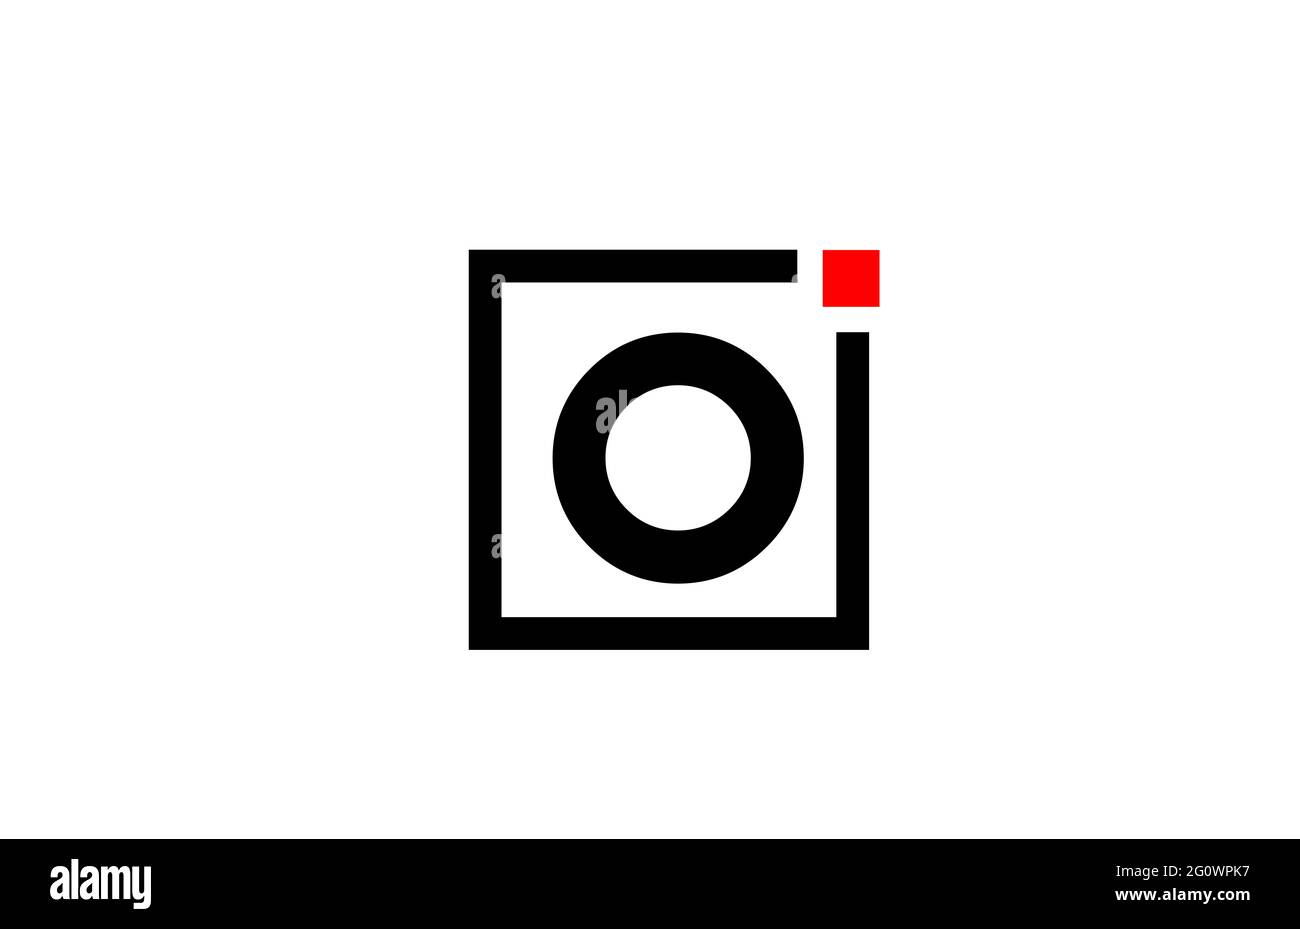 O Logo con l'icona della lettera alfabetica in bianco e nero. Design aziendale e aziendale con punto quadrato e rosso. Modello di identità aziendale creativa Foto Stock